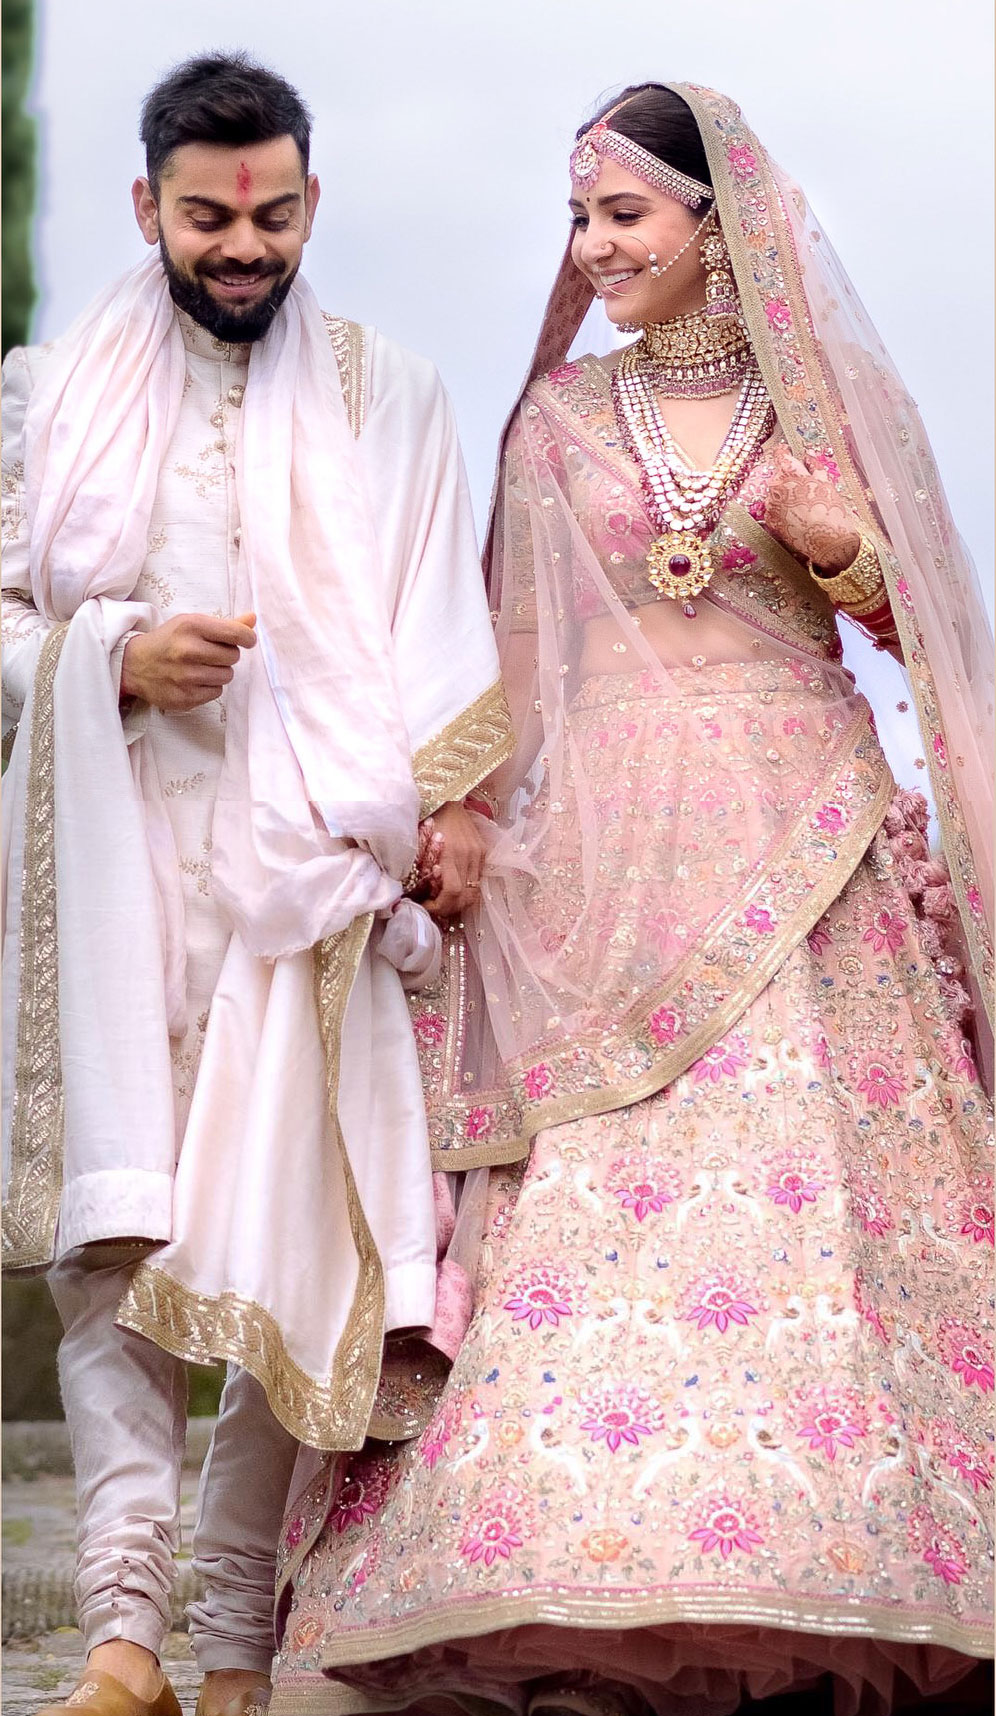 Ranveer Singh or Virat Kohli: Six groom looks you should steal